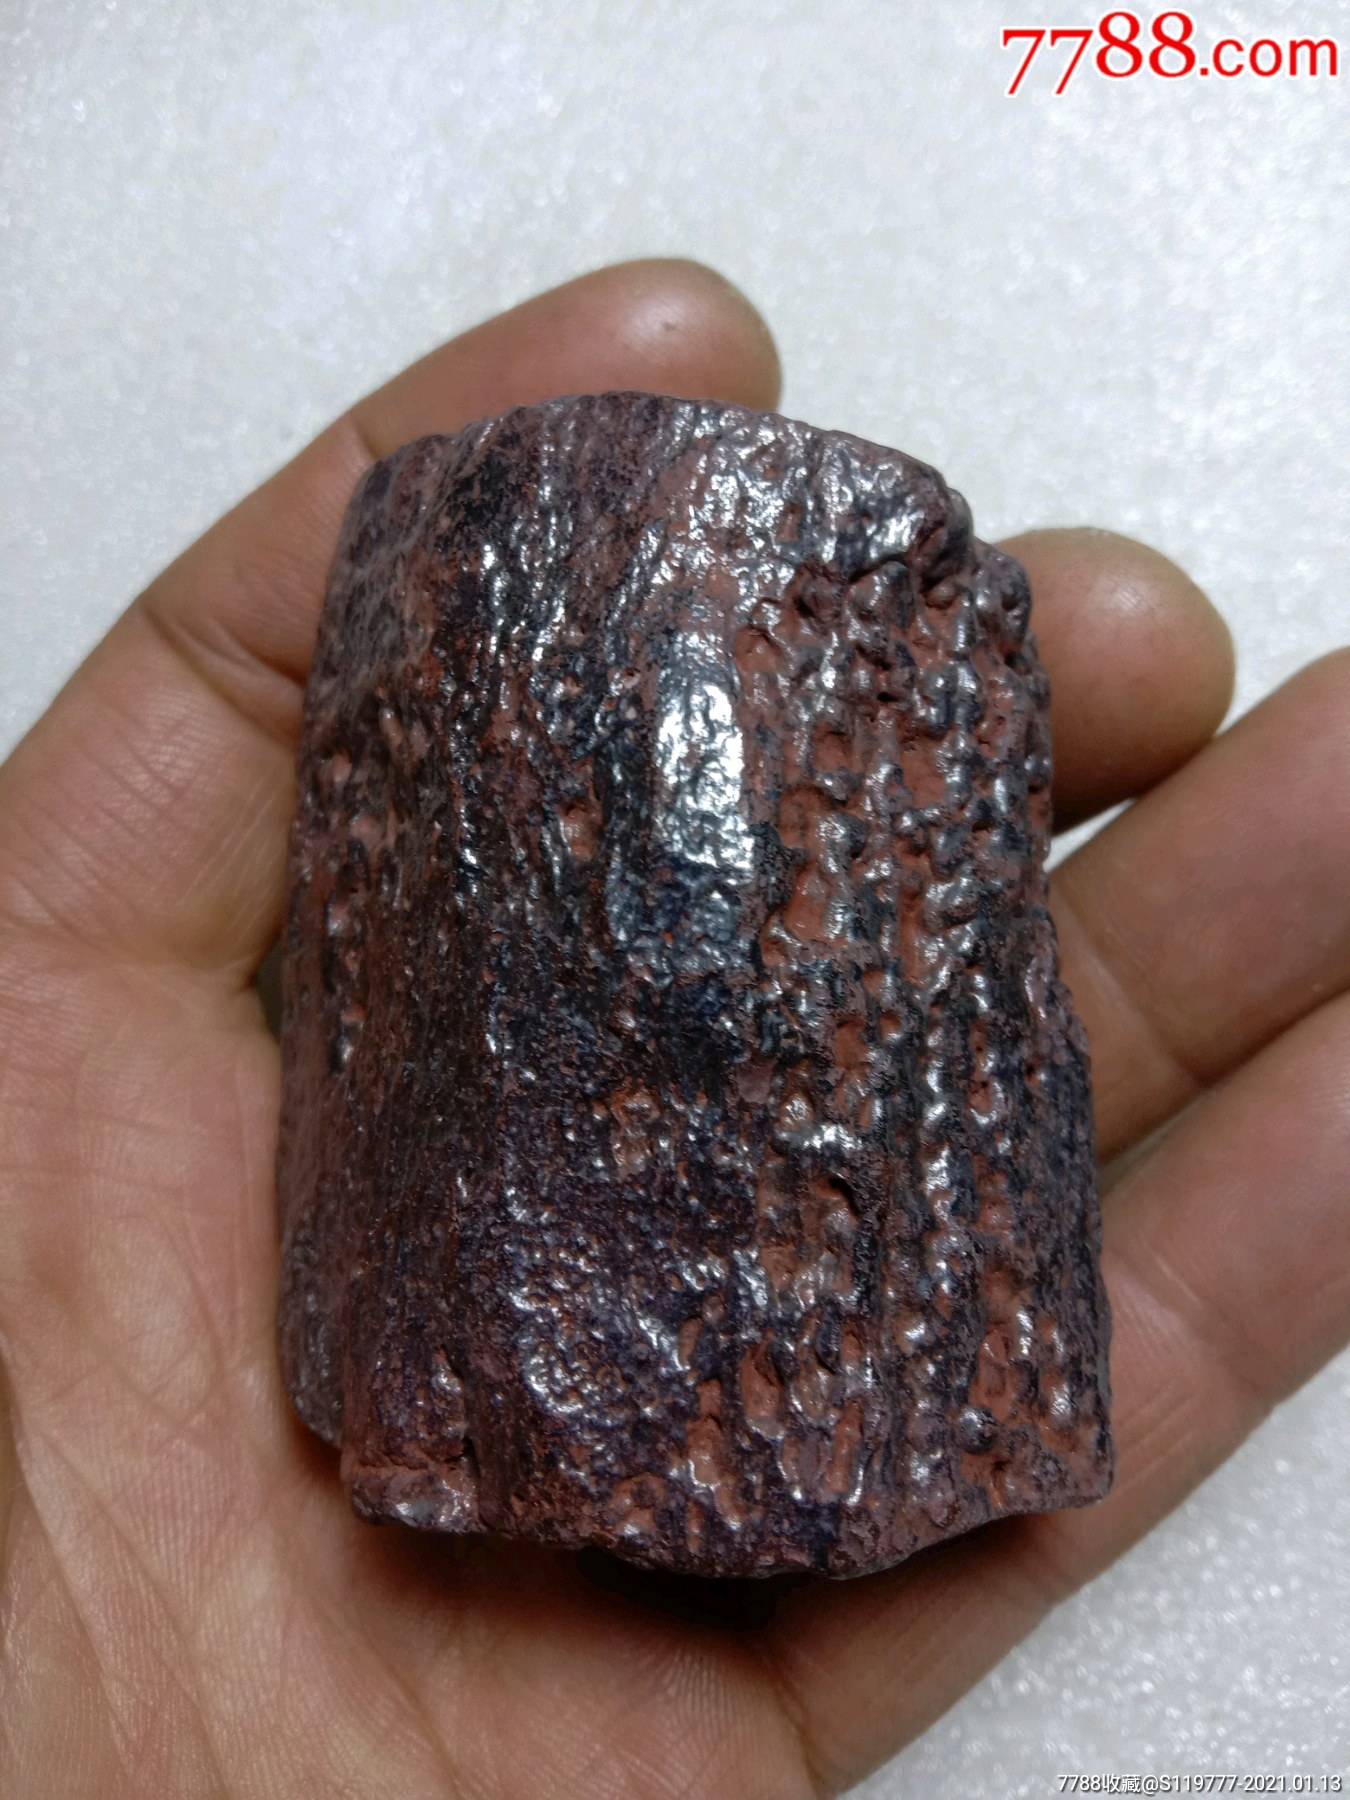 硅化铁陨石